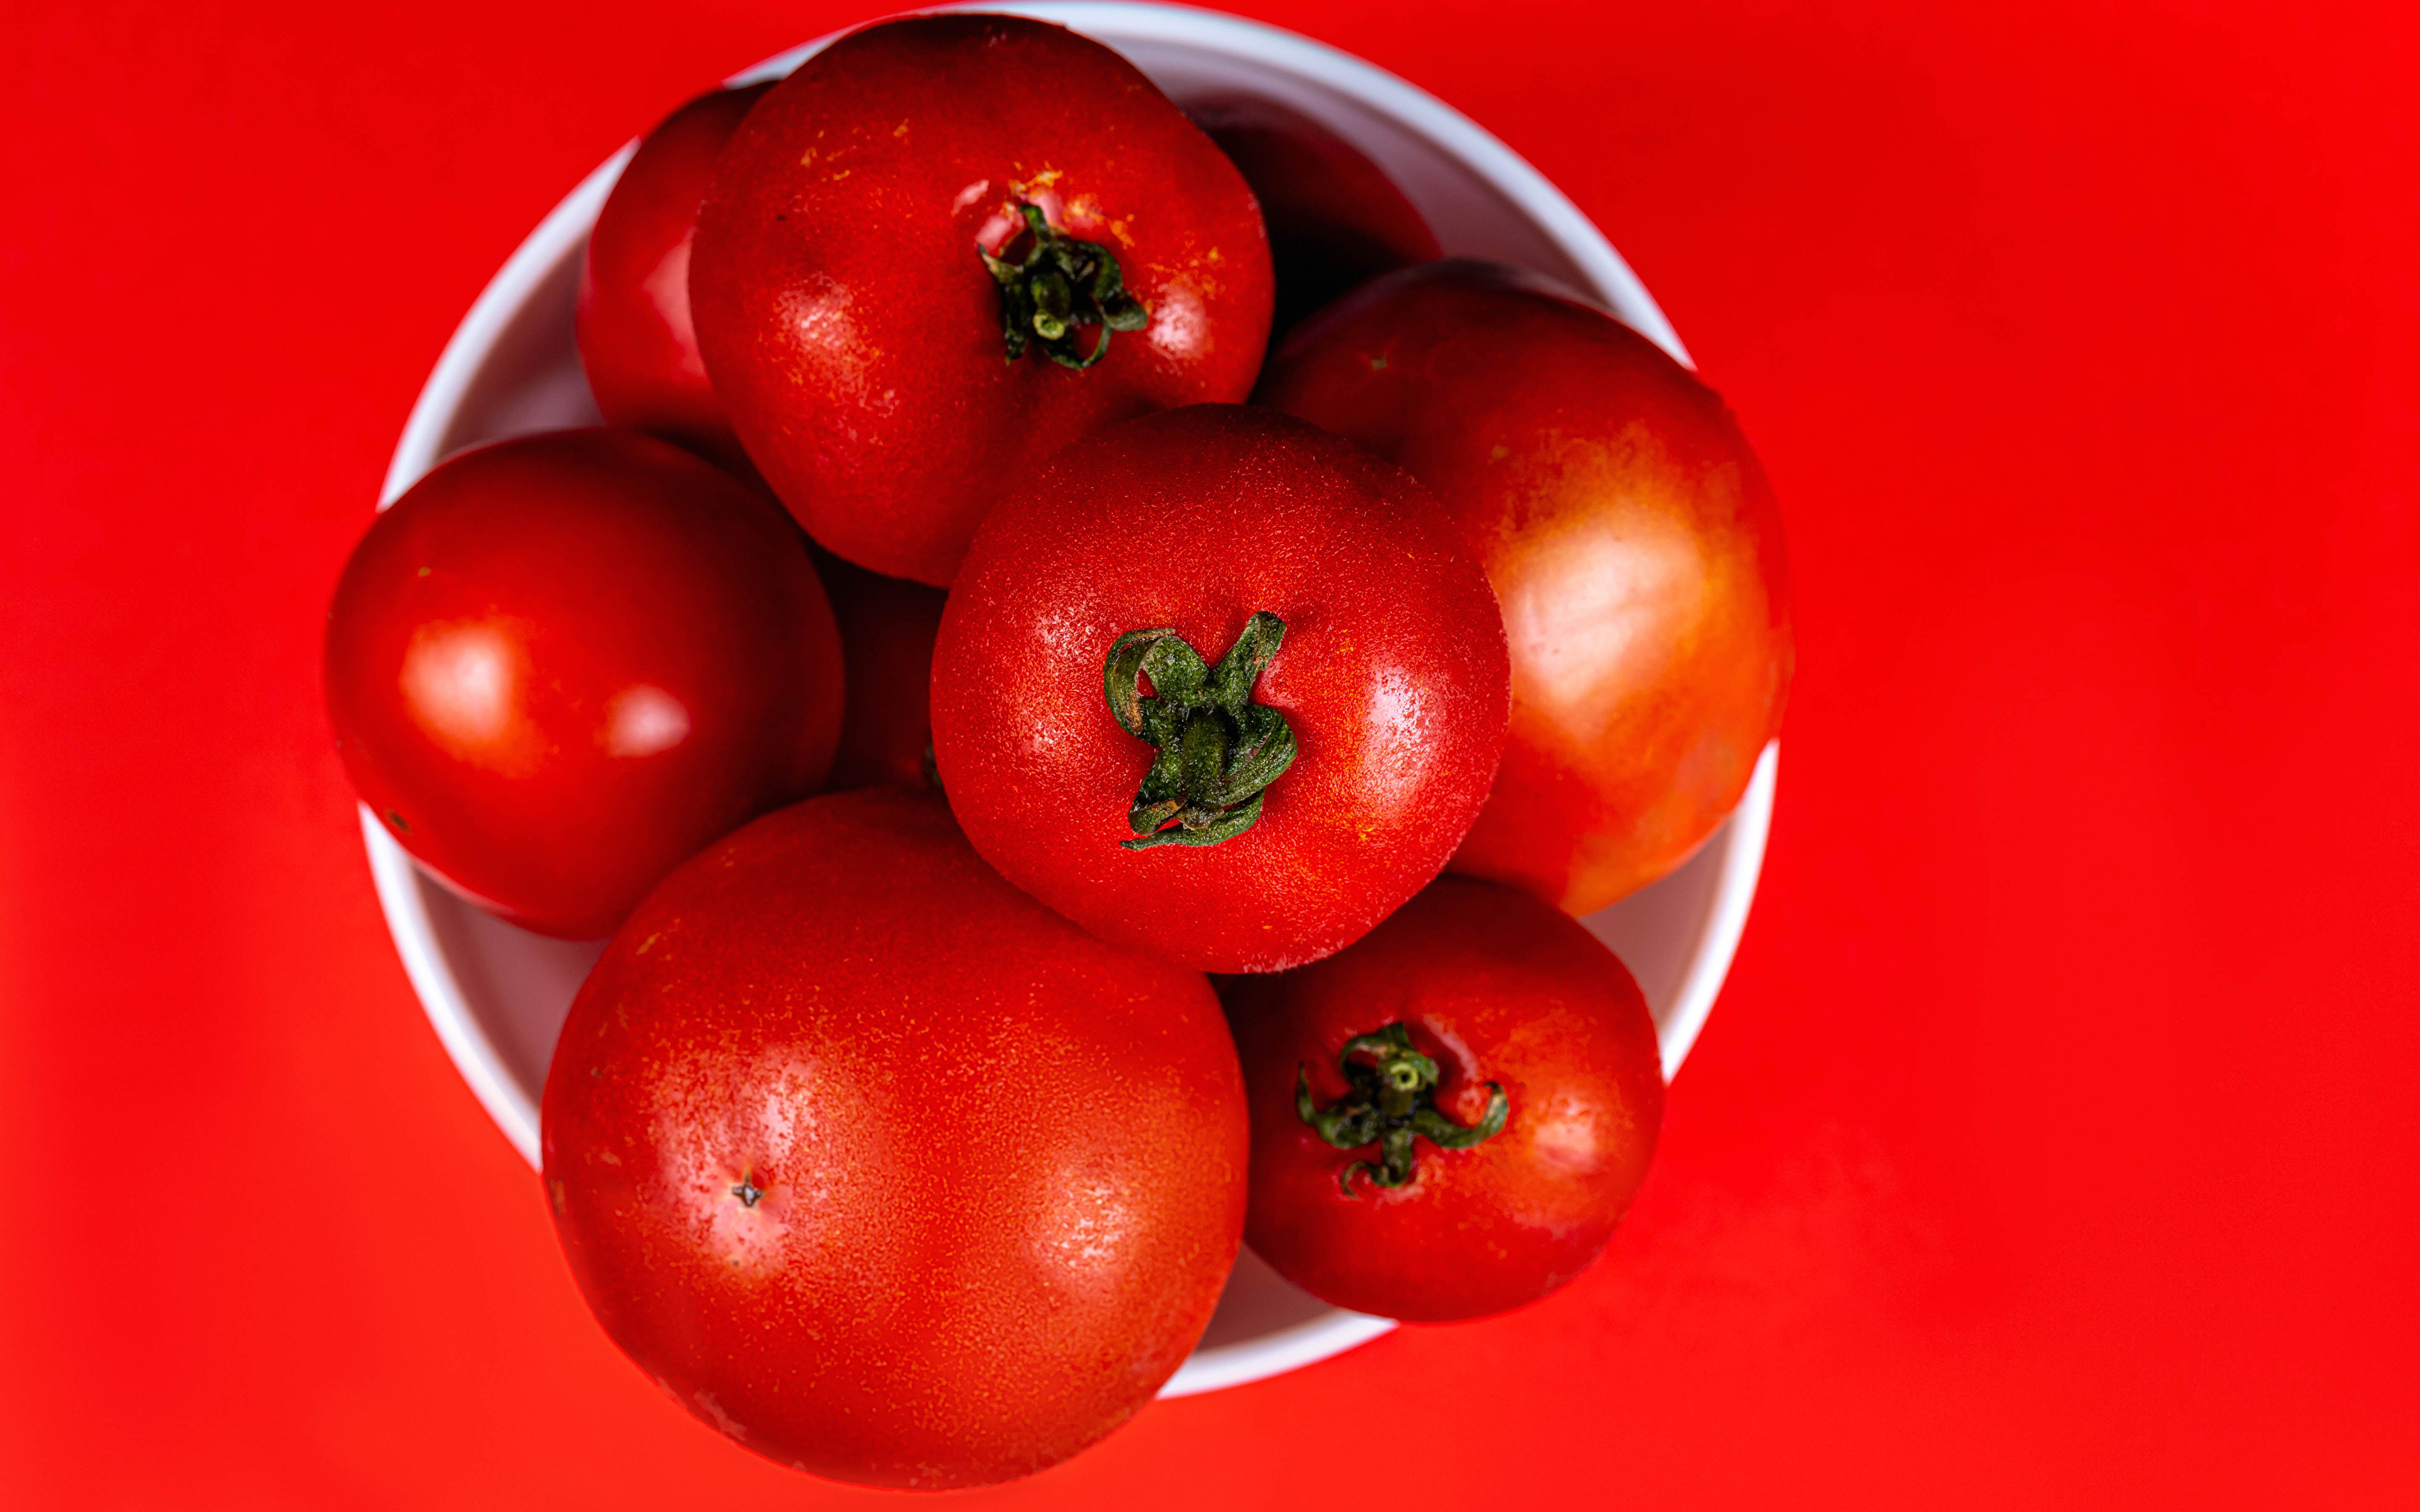 Tomato red. Красный помидор. Овощи красного цвета. Крупные помидоры. Помидоры красные крупные.